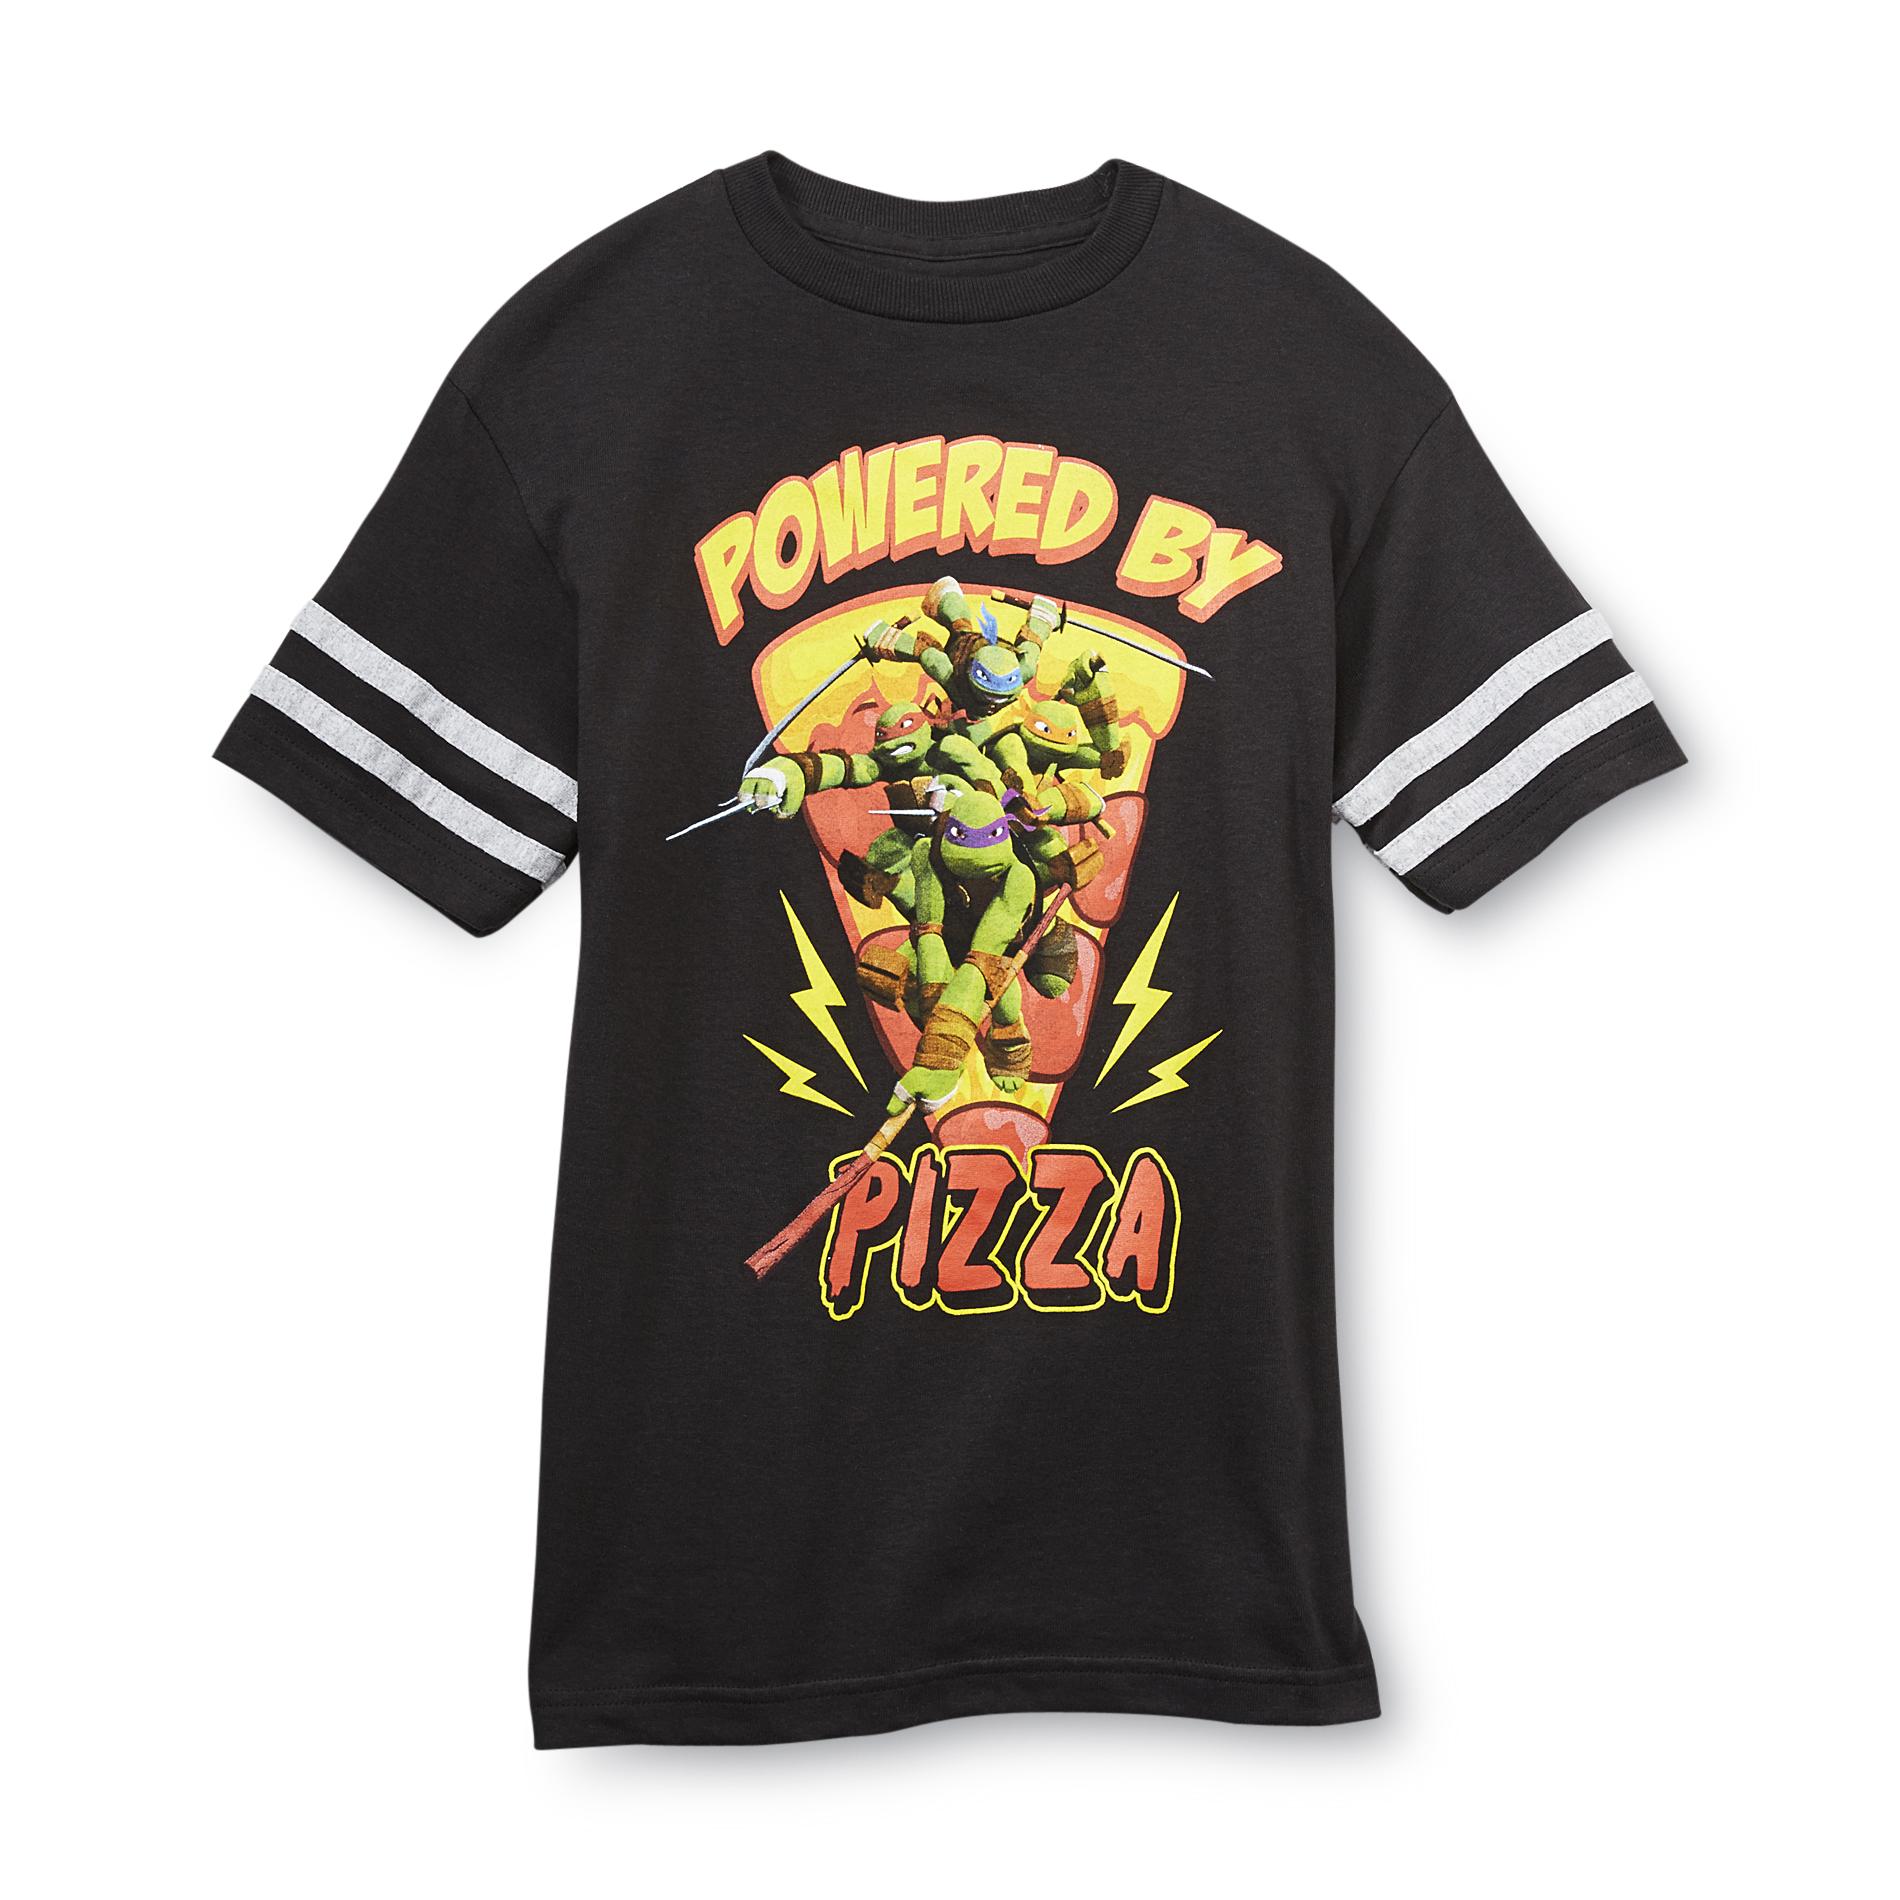 Nickelodeon Teenage Mutant Ninja Turtles Boy's Ringer Graphic T-Shirt